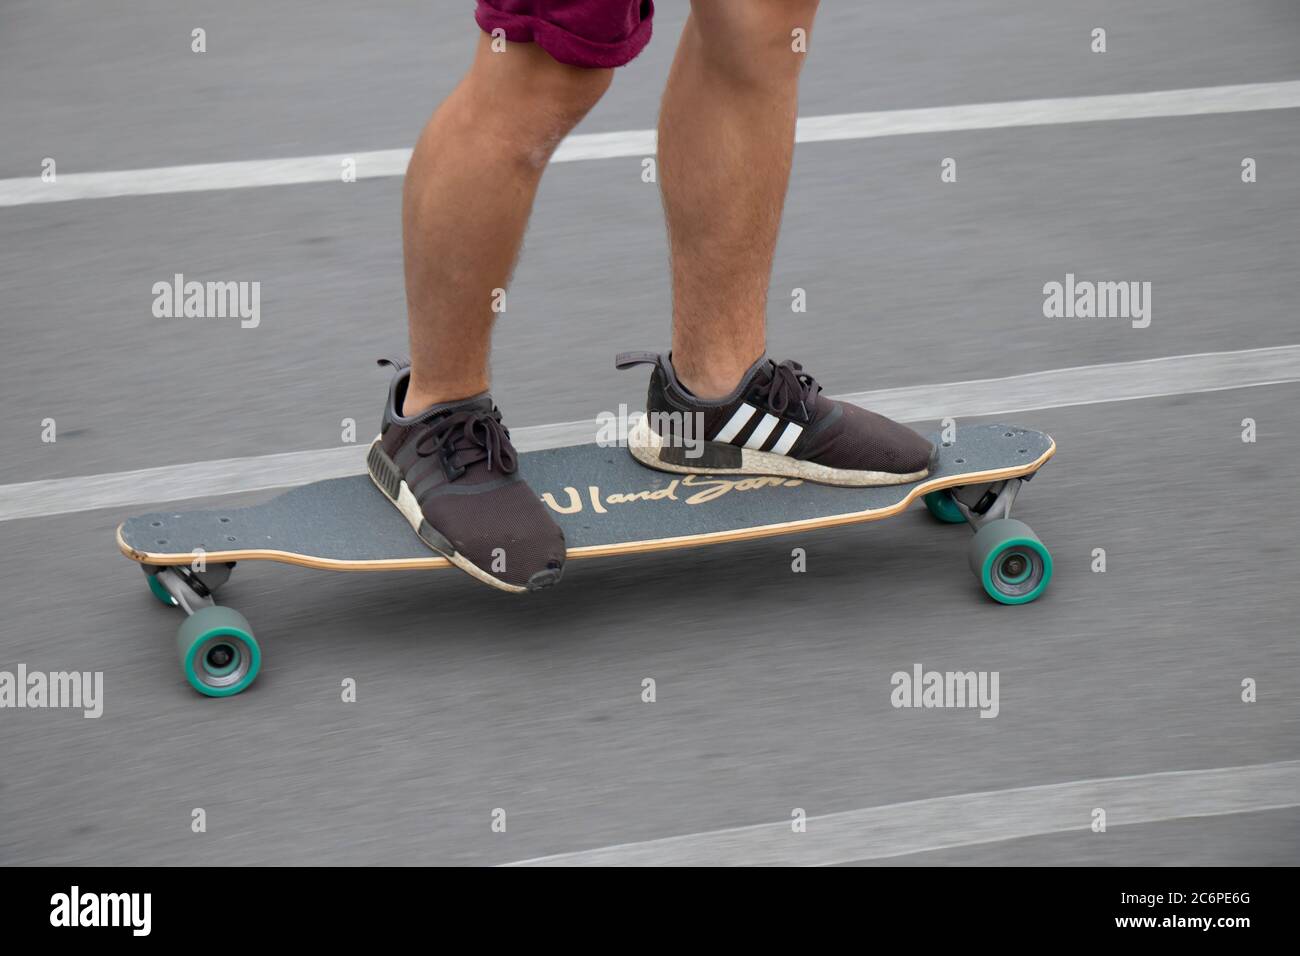 Belgrade, Serbie - 3 juillet 2020 : pattes d'un jeune homme à bord d'un skateboard sur la piste cyclable de la ville Banque D'Images